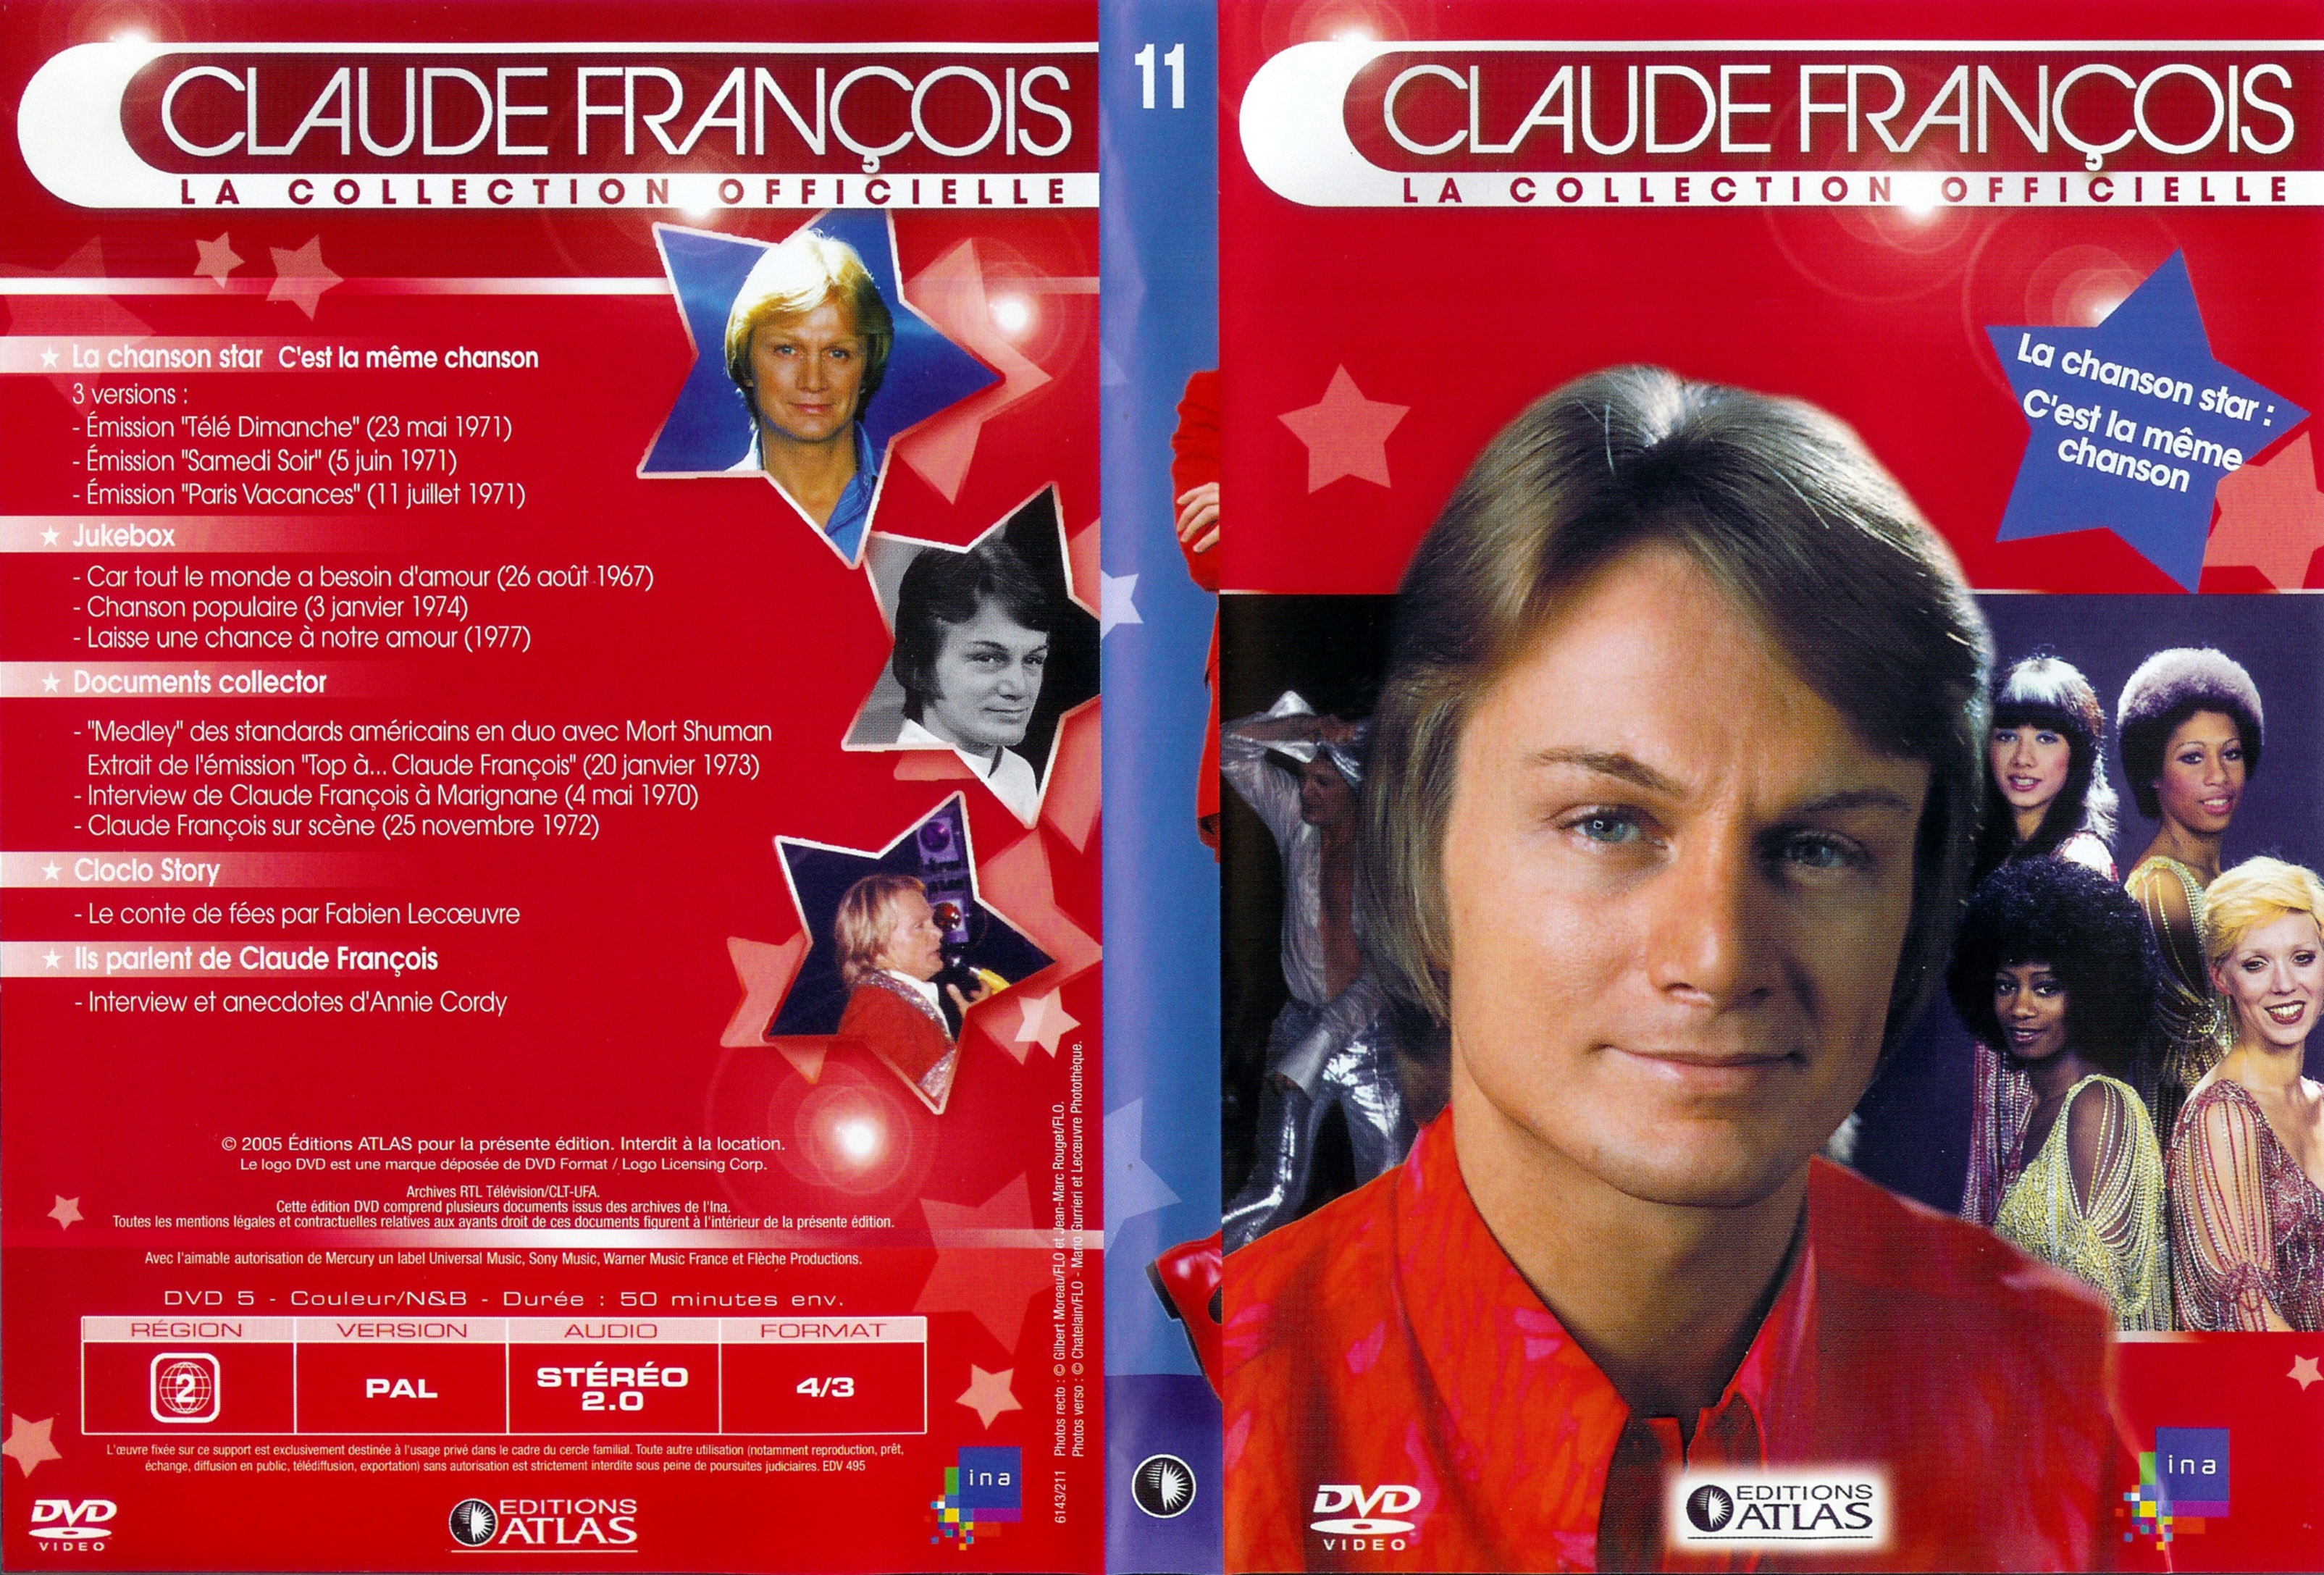 Jaquette DVD Claude Francois la collection officielle vol 11